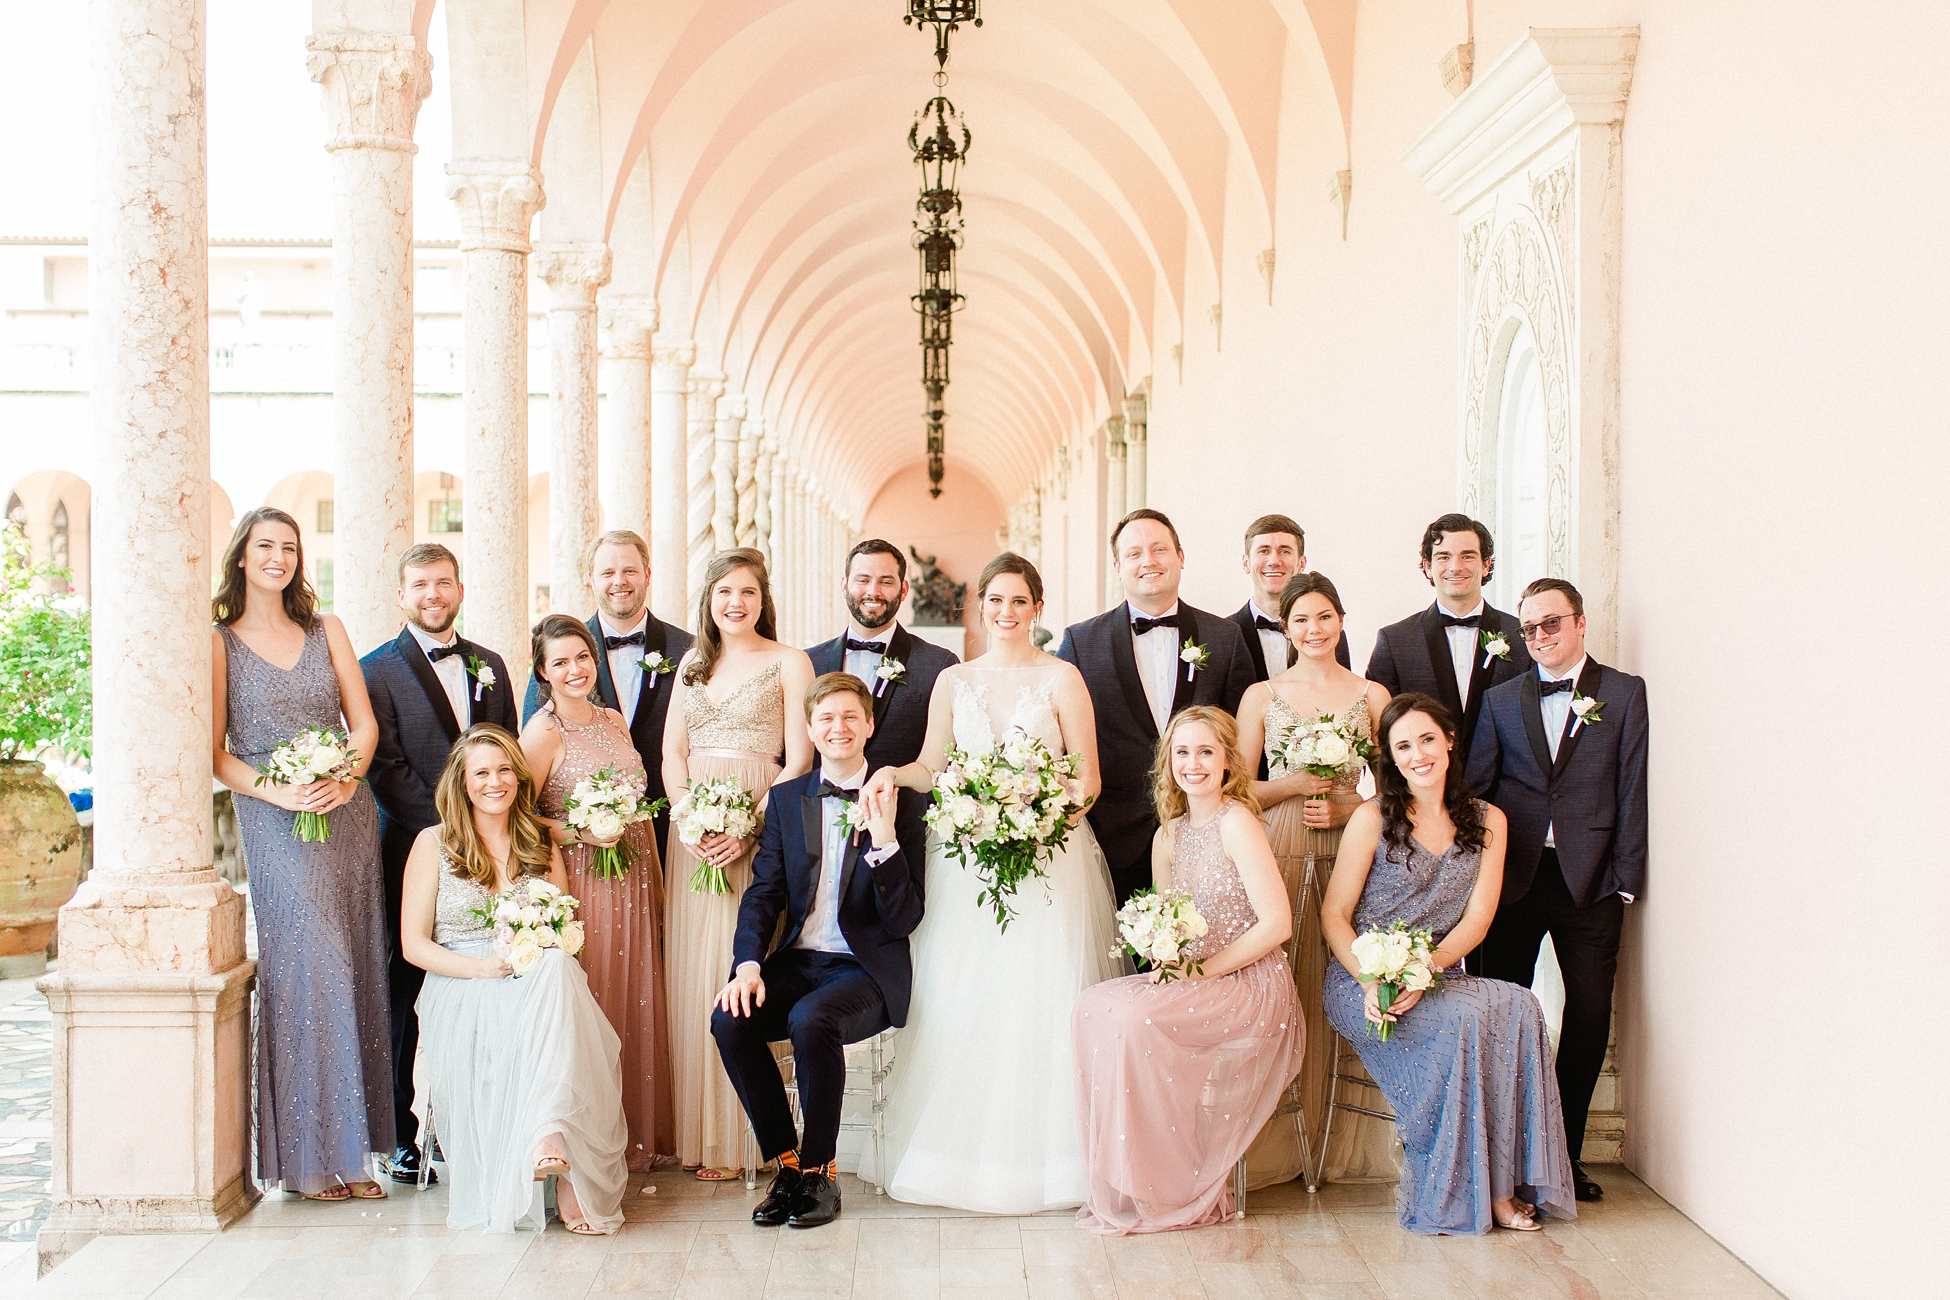 Powel Crosley Wedding | © Ailyn LaTorre Photography 2019